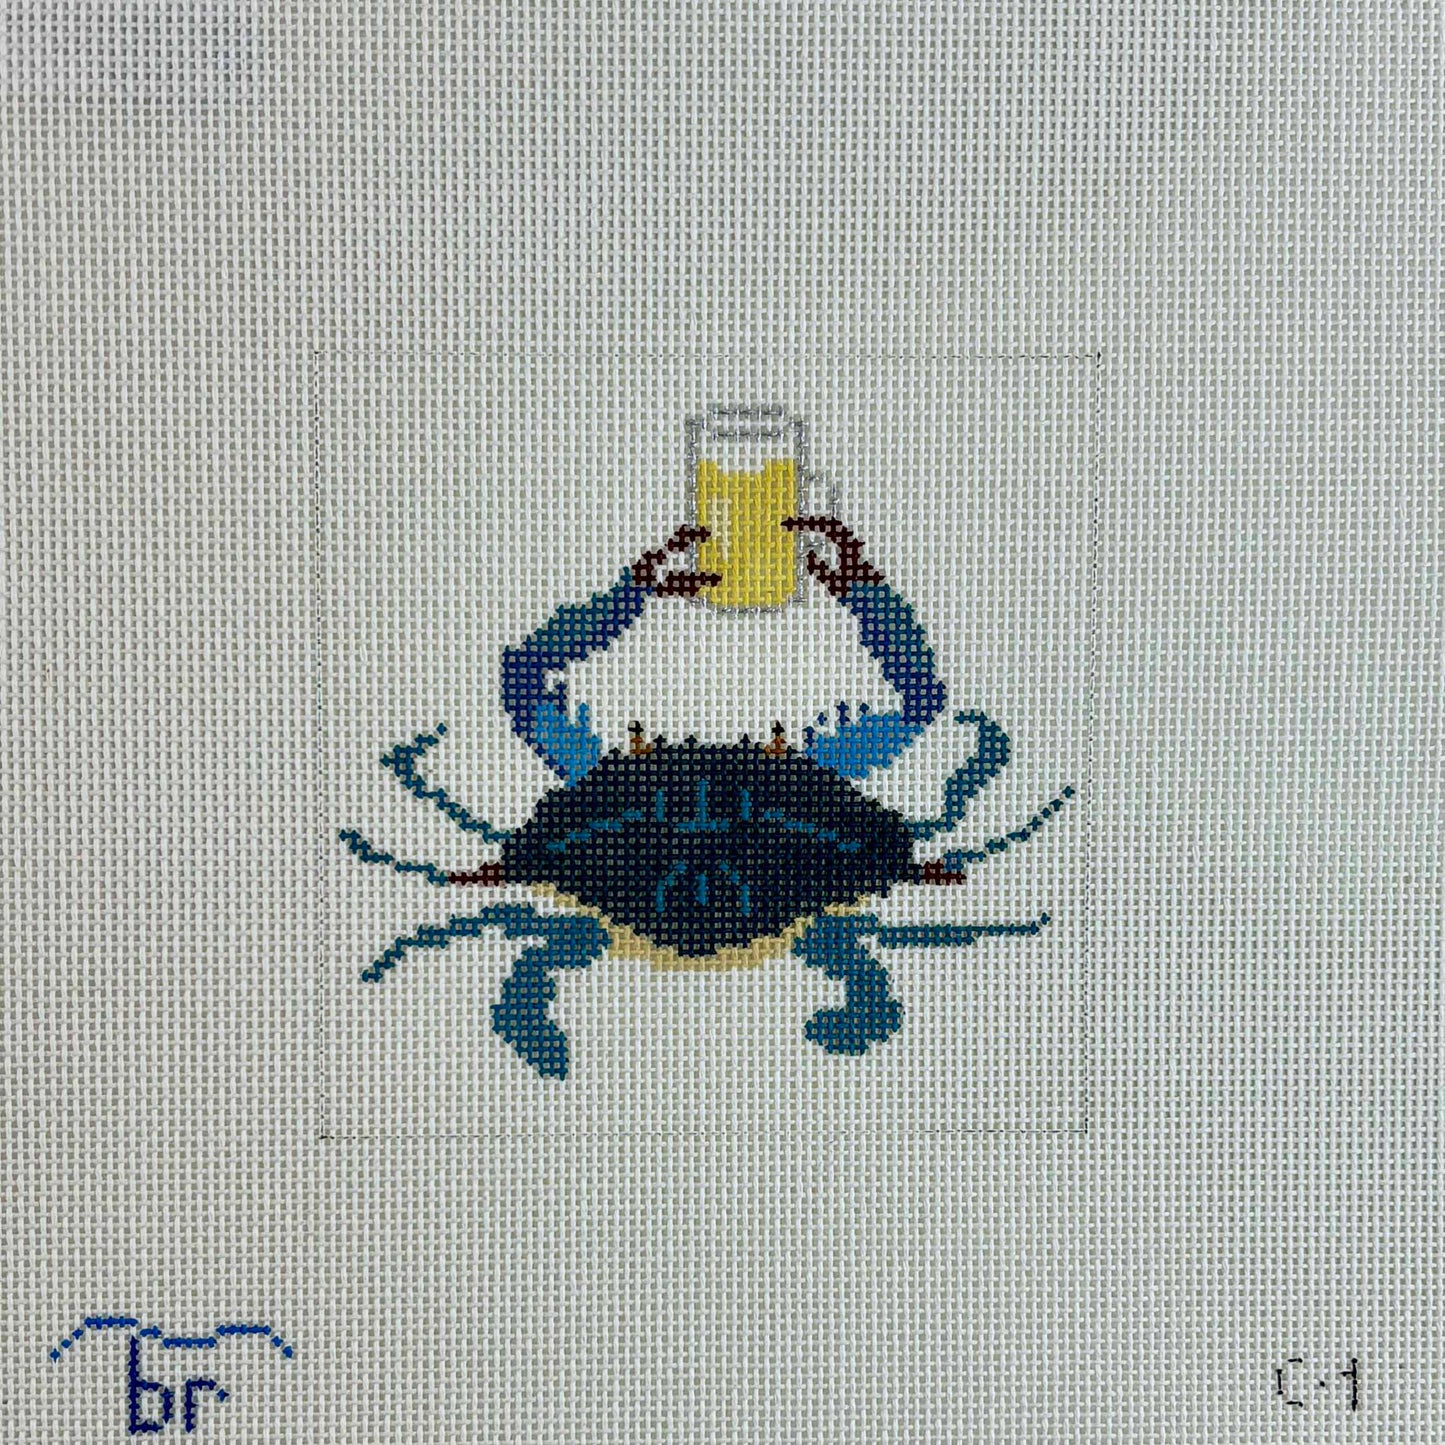 Boozy Sea Creatures: Blue Crab & Beer